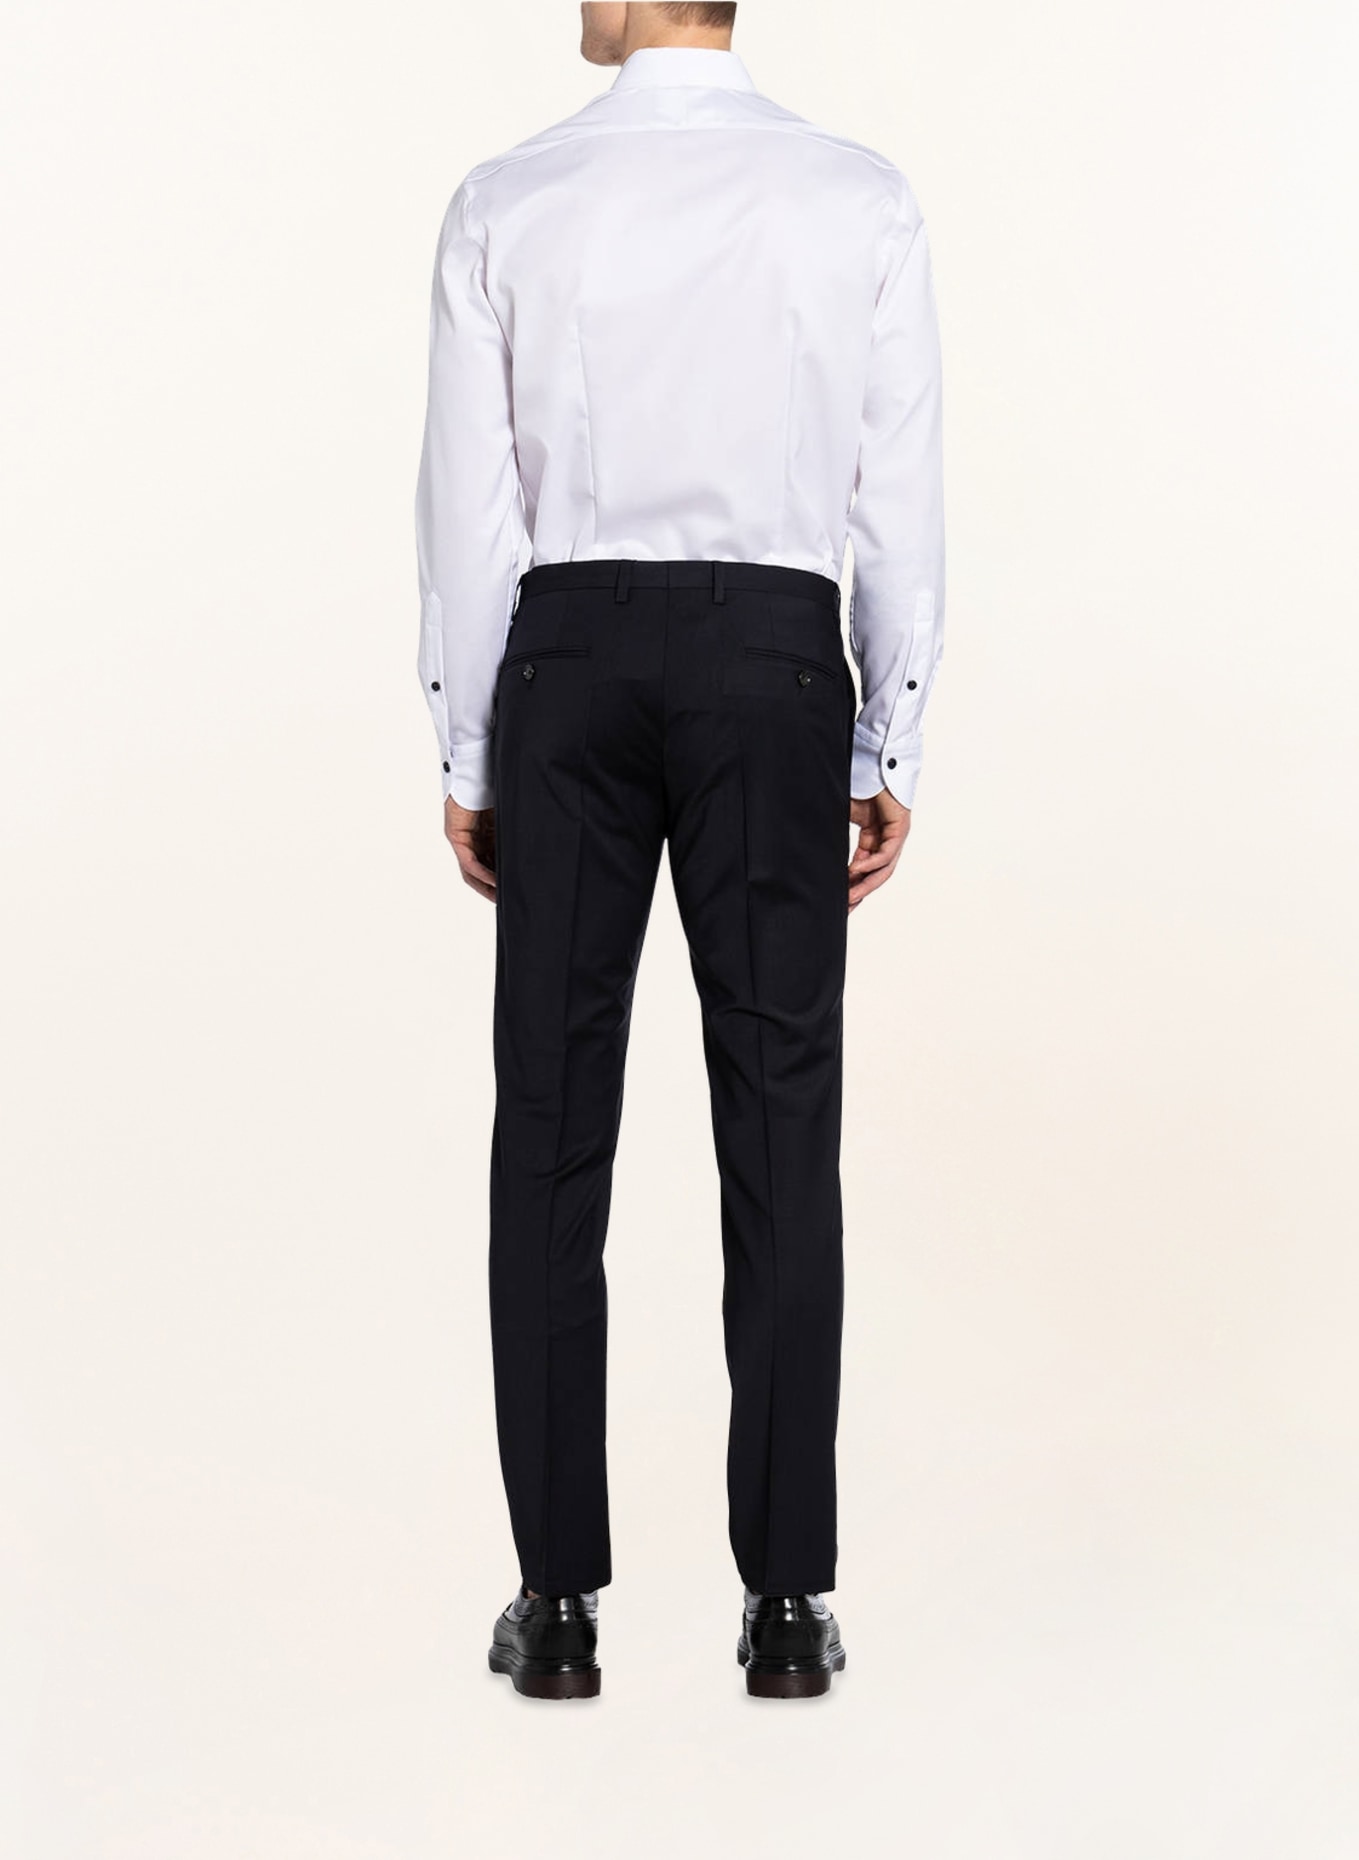 JOOP! Suit trousers BLAYR slim fit, Color: 400 DARK BLUE 400 (Image 4)